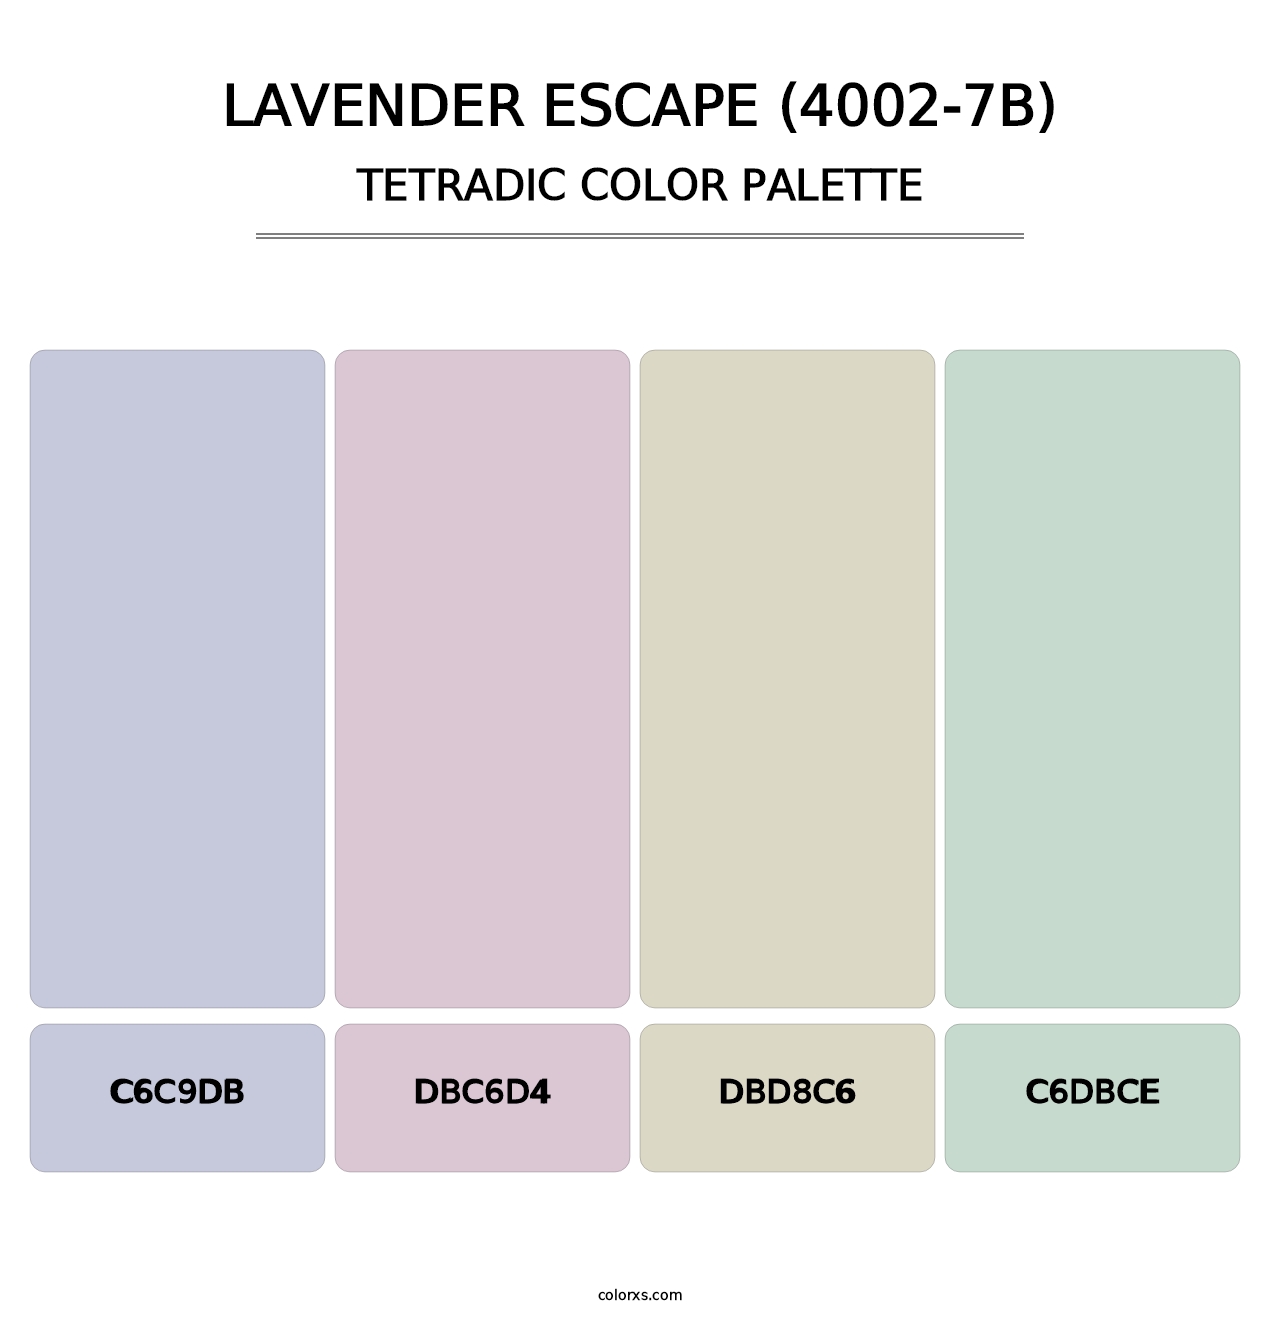 Lavender Escape (4002-7B) - Tetradic Color Palette